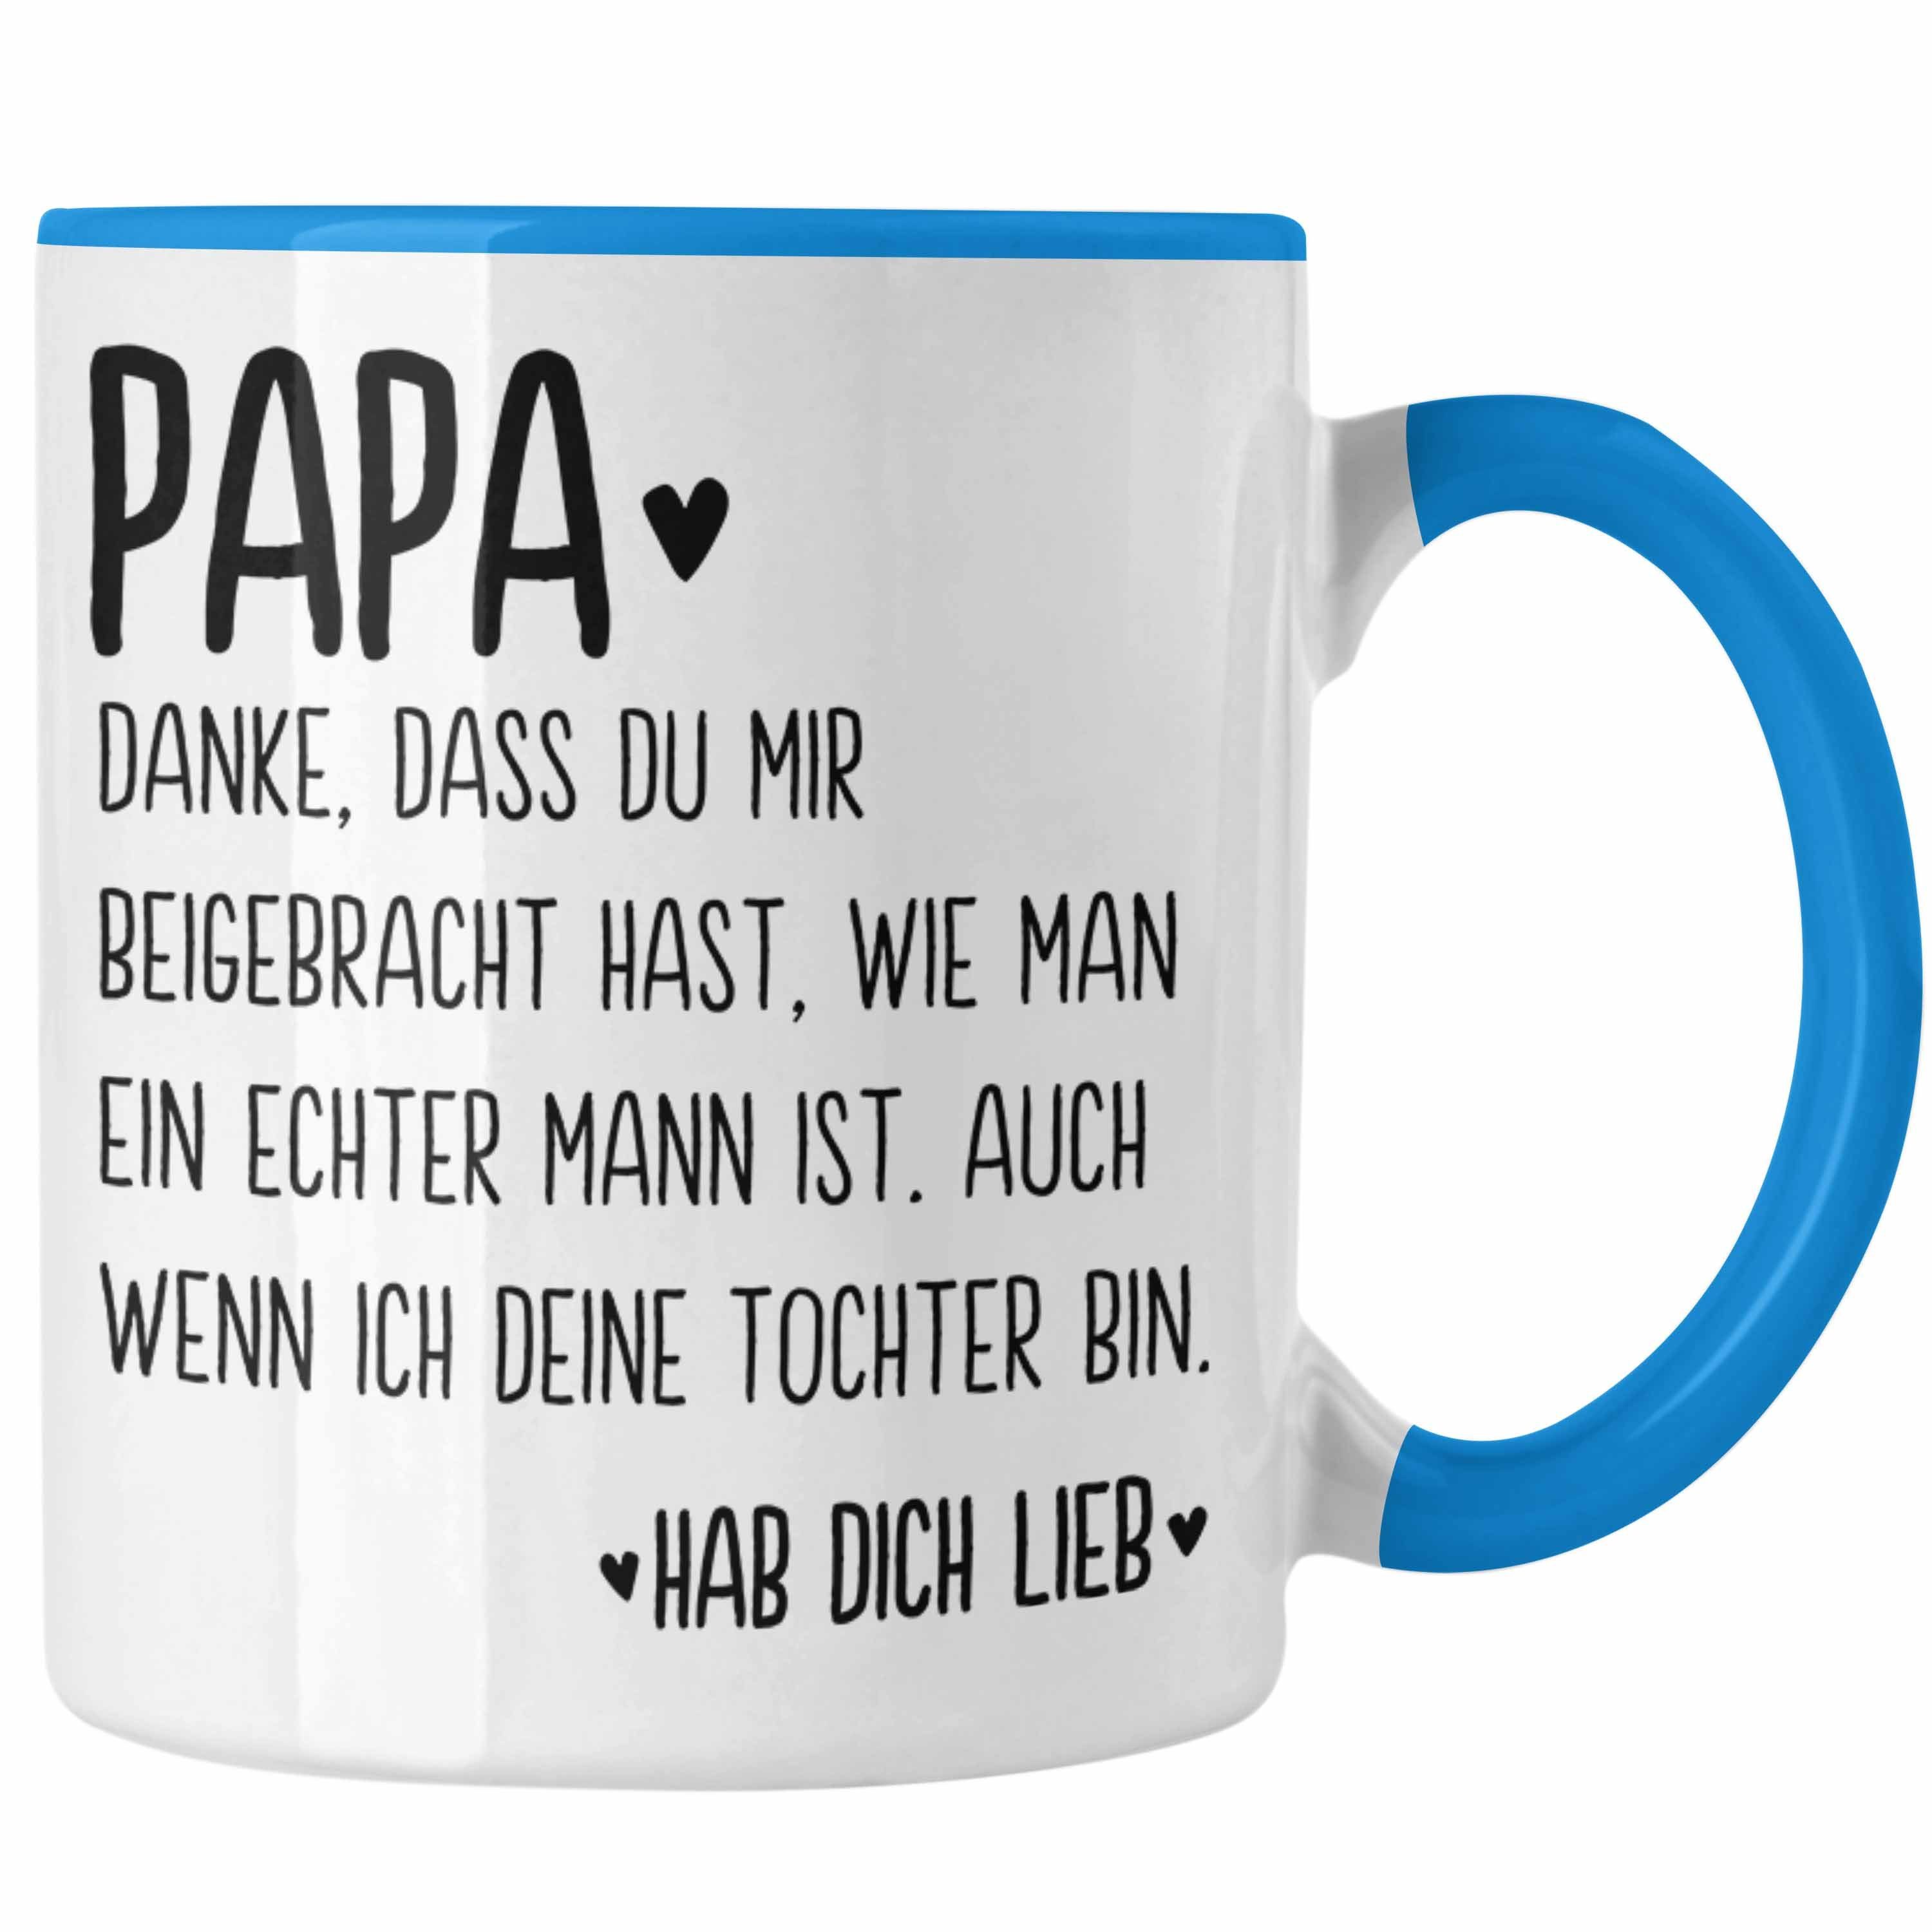 Trendation Tasse Tochter Vater Vatertag Trendation Tasse Sprüche Spruch von Geschenk Papa Geschenkidee - Blau Kaffeetasse